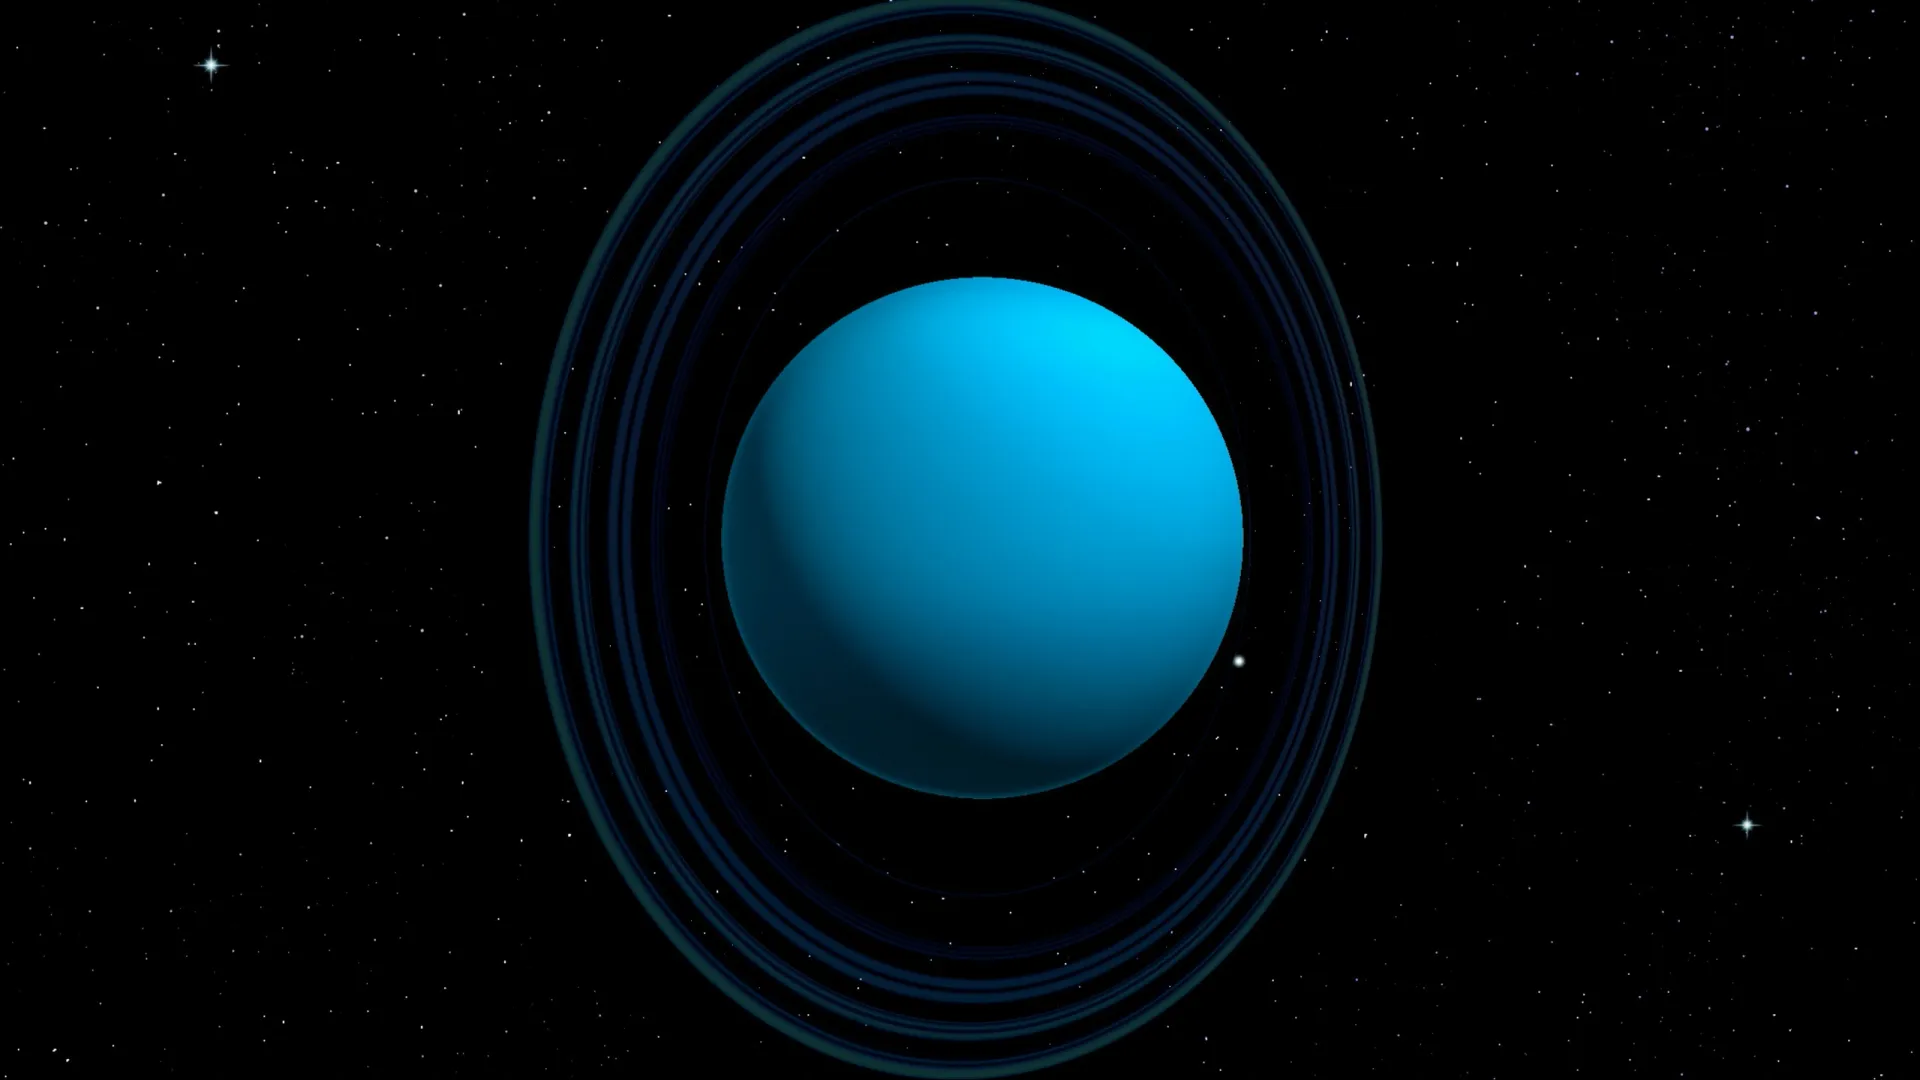 На самом деле Уран и вращается ретроградно, «лежа на боку» — плоскость его экватора наклонена к плоскости его орбиты почти под прямым углом. Иллюстрация: MattL_Images / Shutterstock / Fotodom